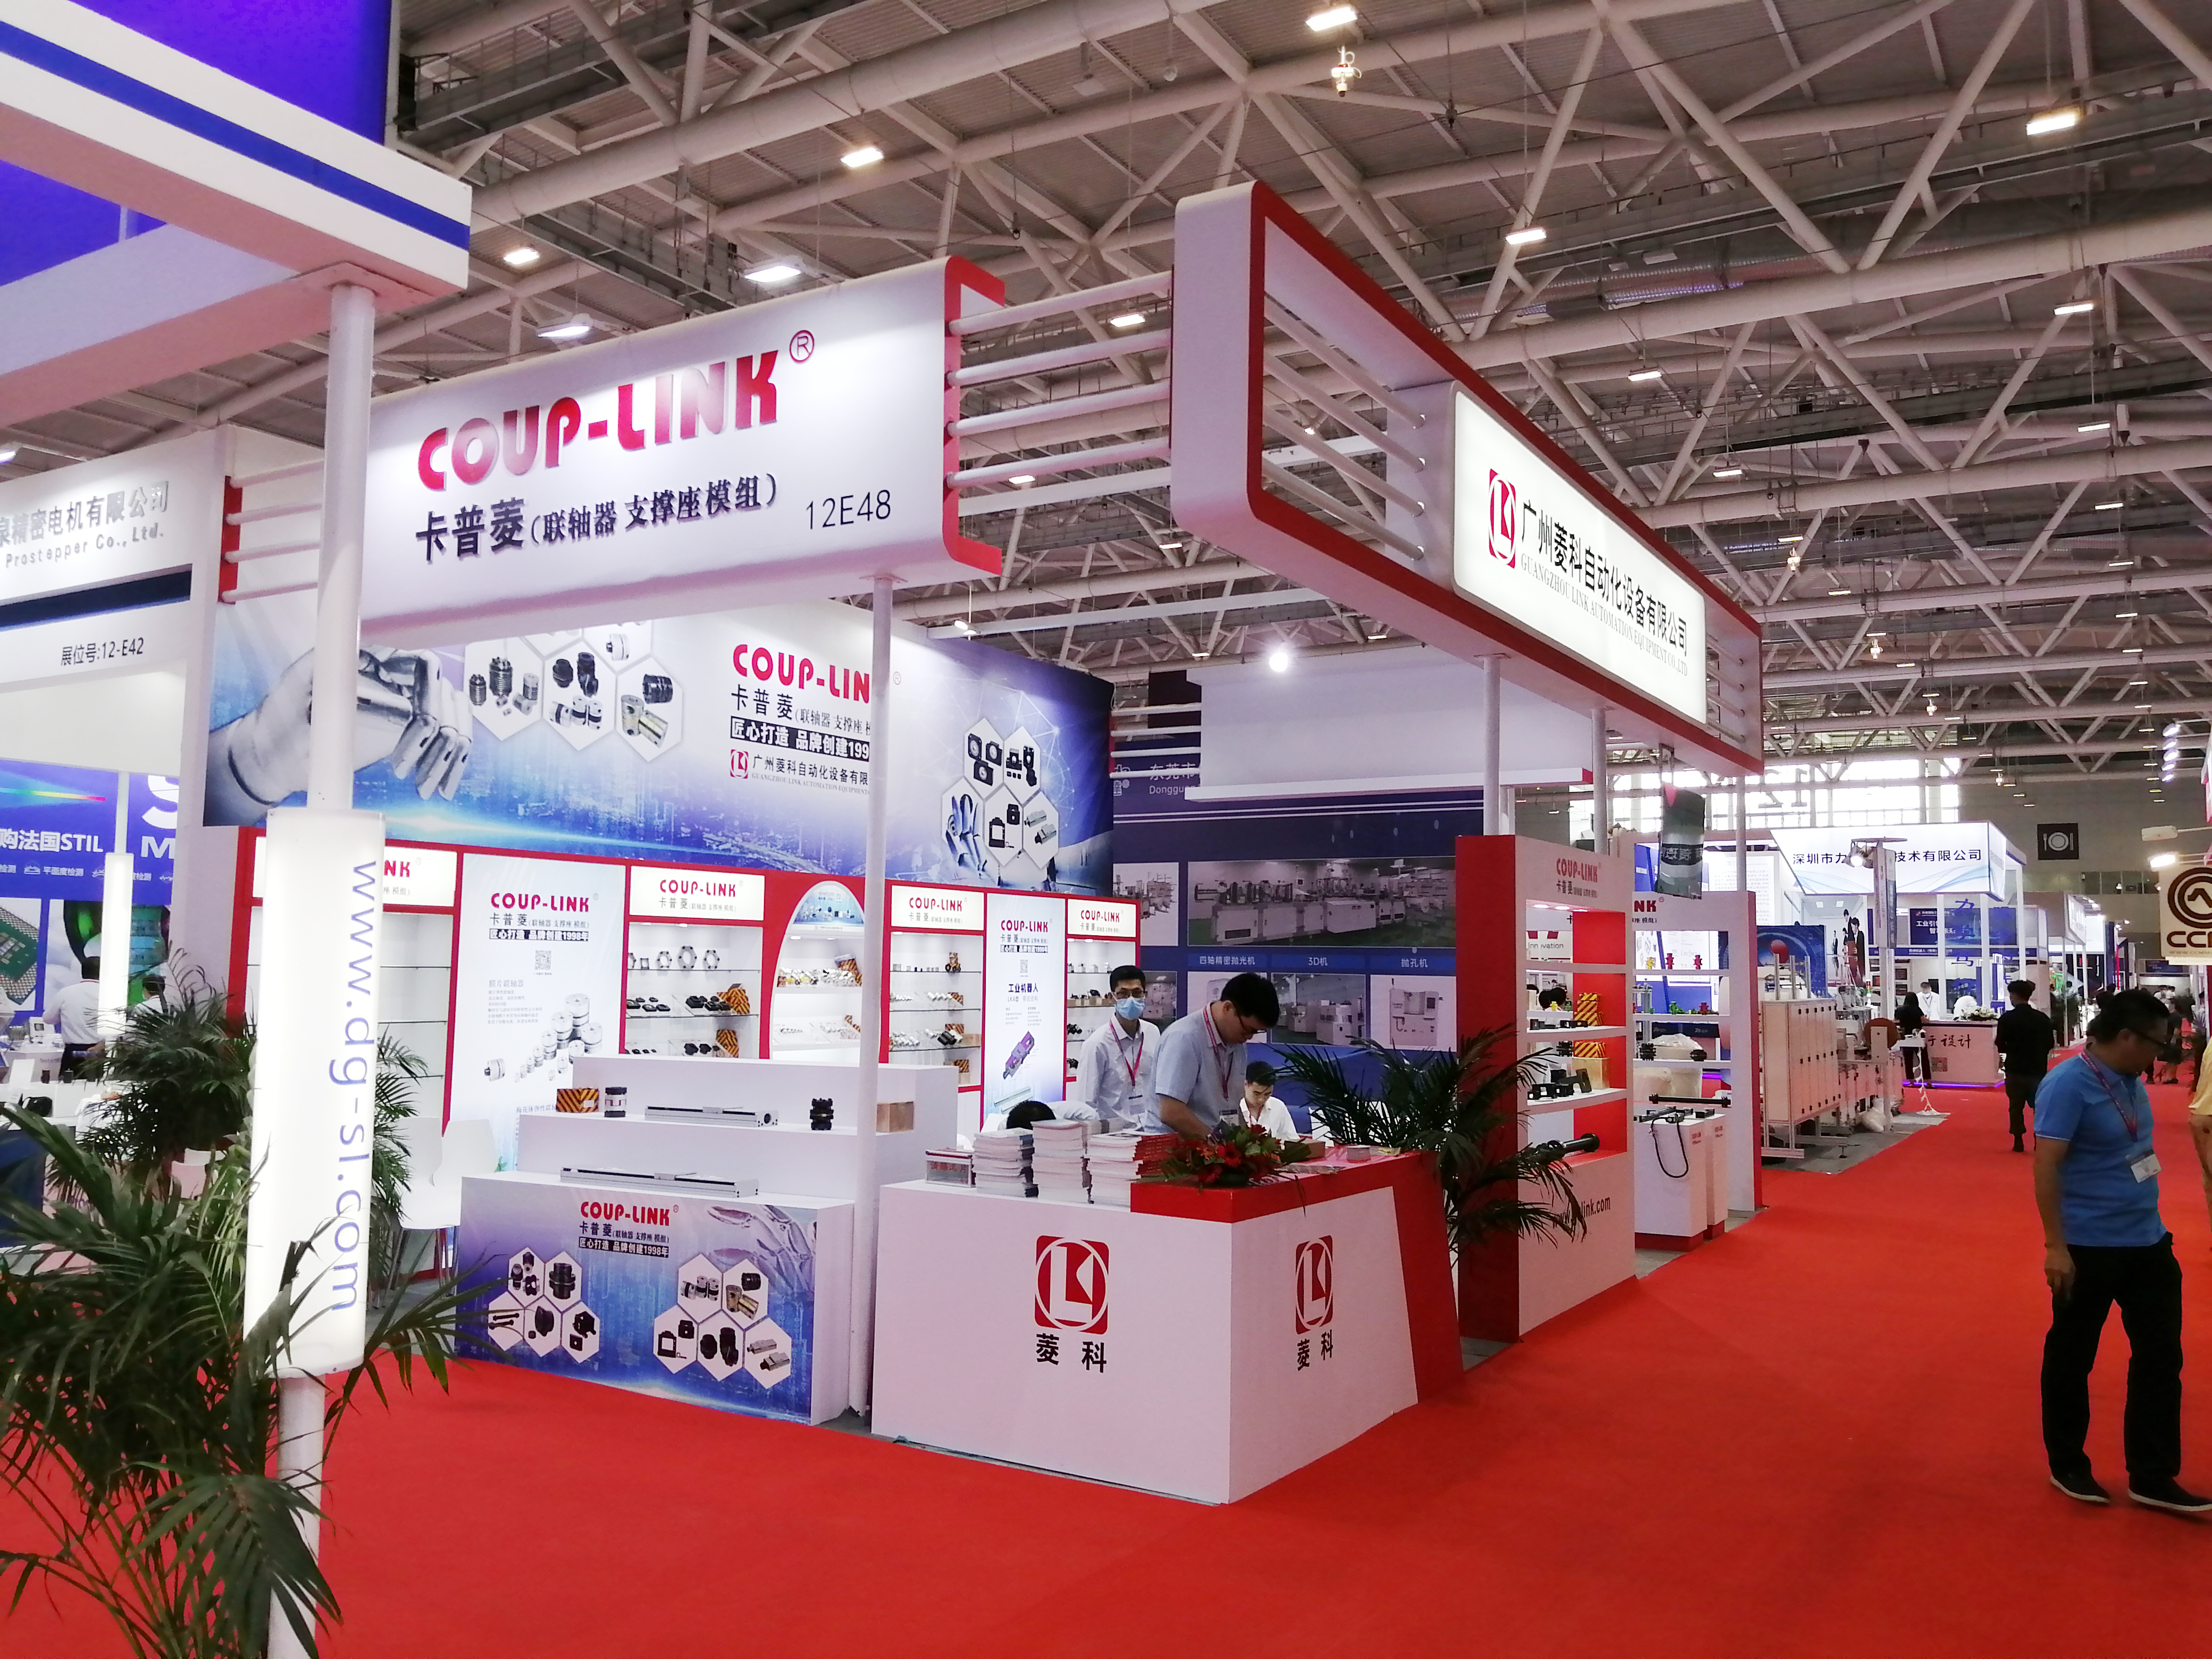 2020年10月 華南（深圳）國際工業博覽會_聯軸器的選擇-廣州菱科自動化設備有限公司